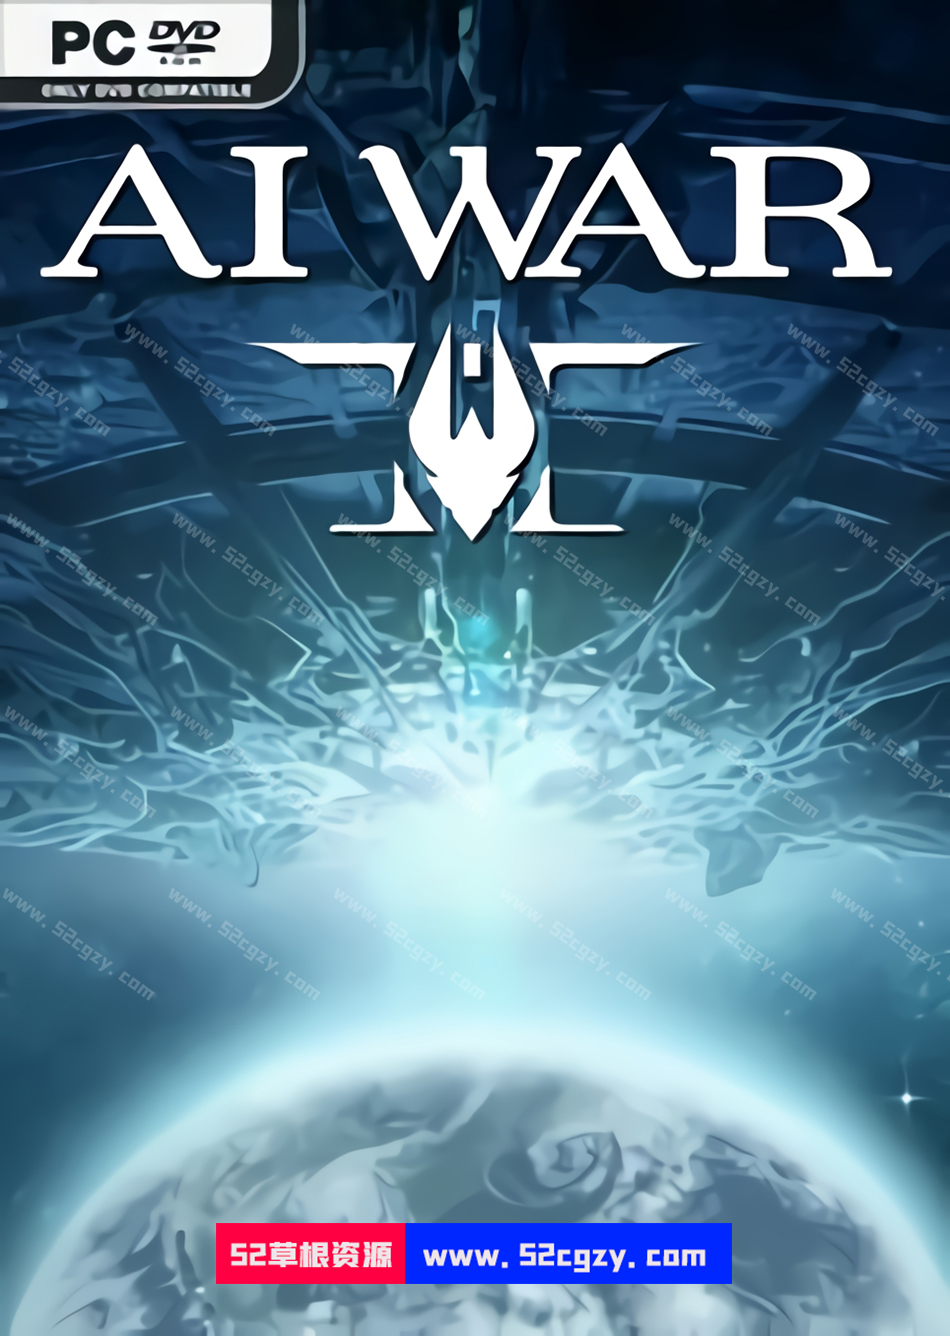 《人工智能战争 2》《AI WAR 2》完全版 FLT【4.17GB】 单机游戏 第1张